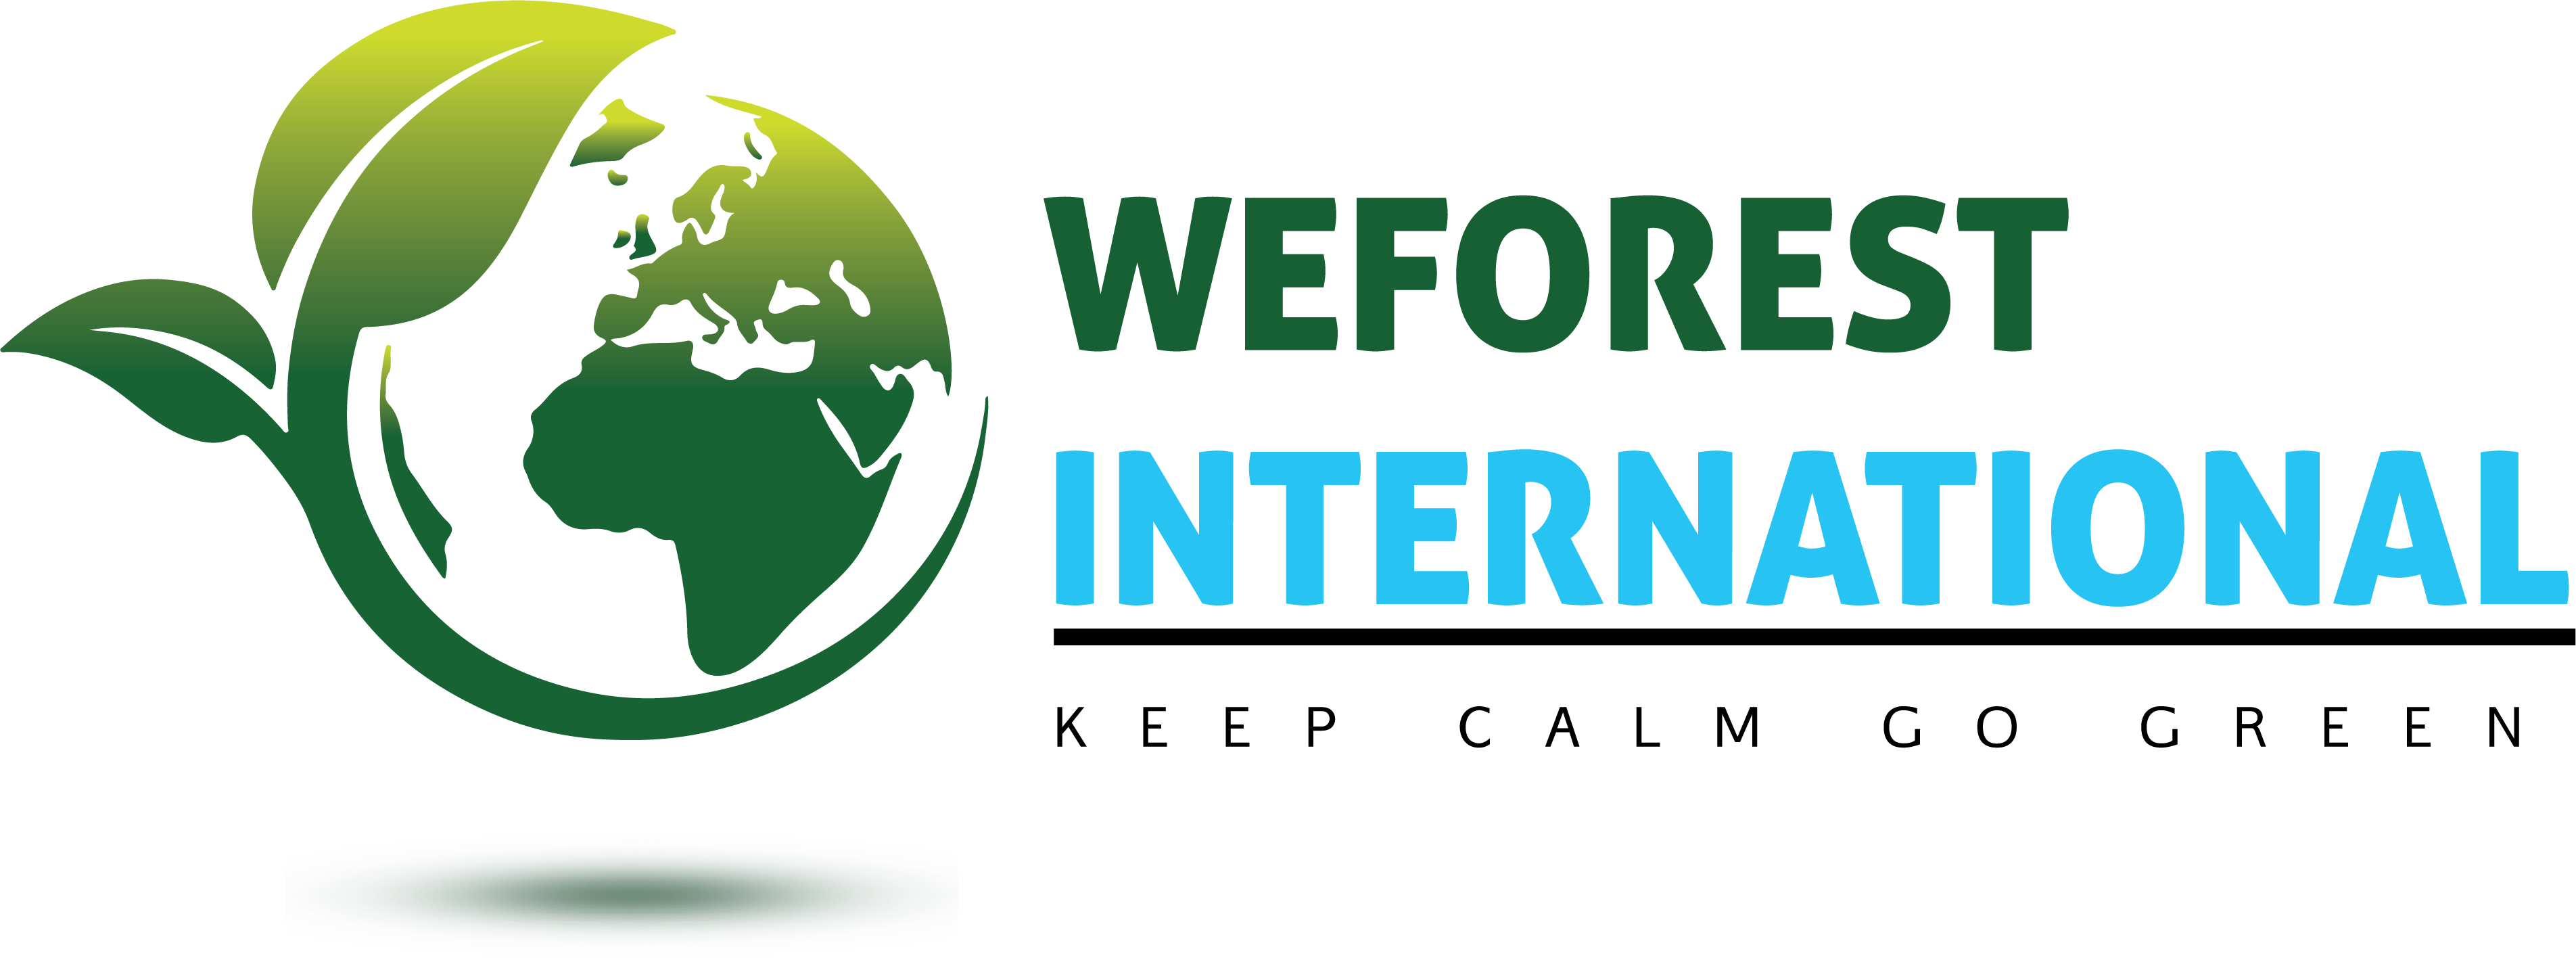 Weforest International